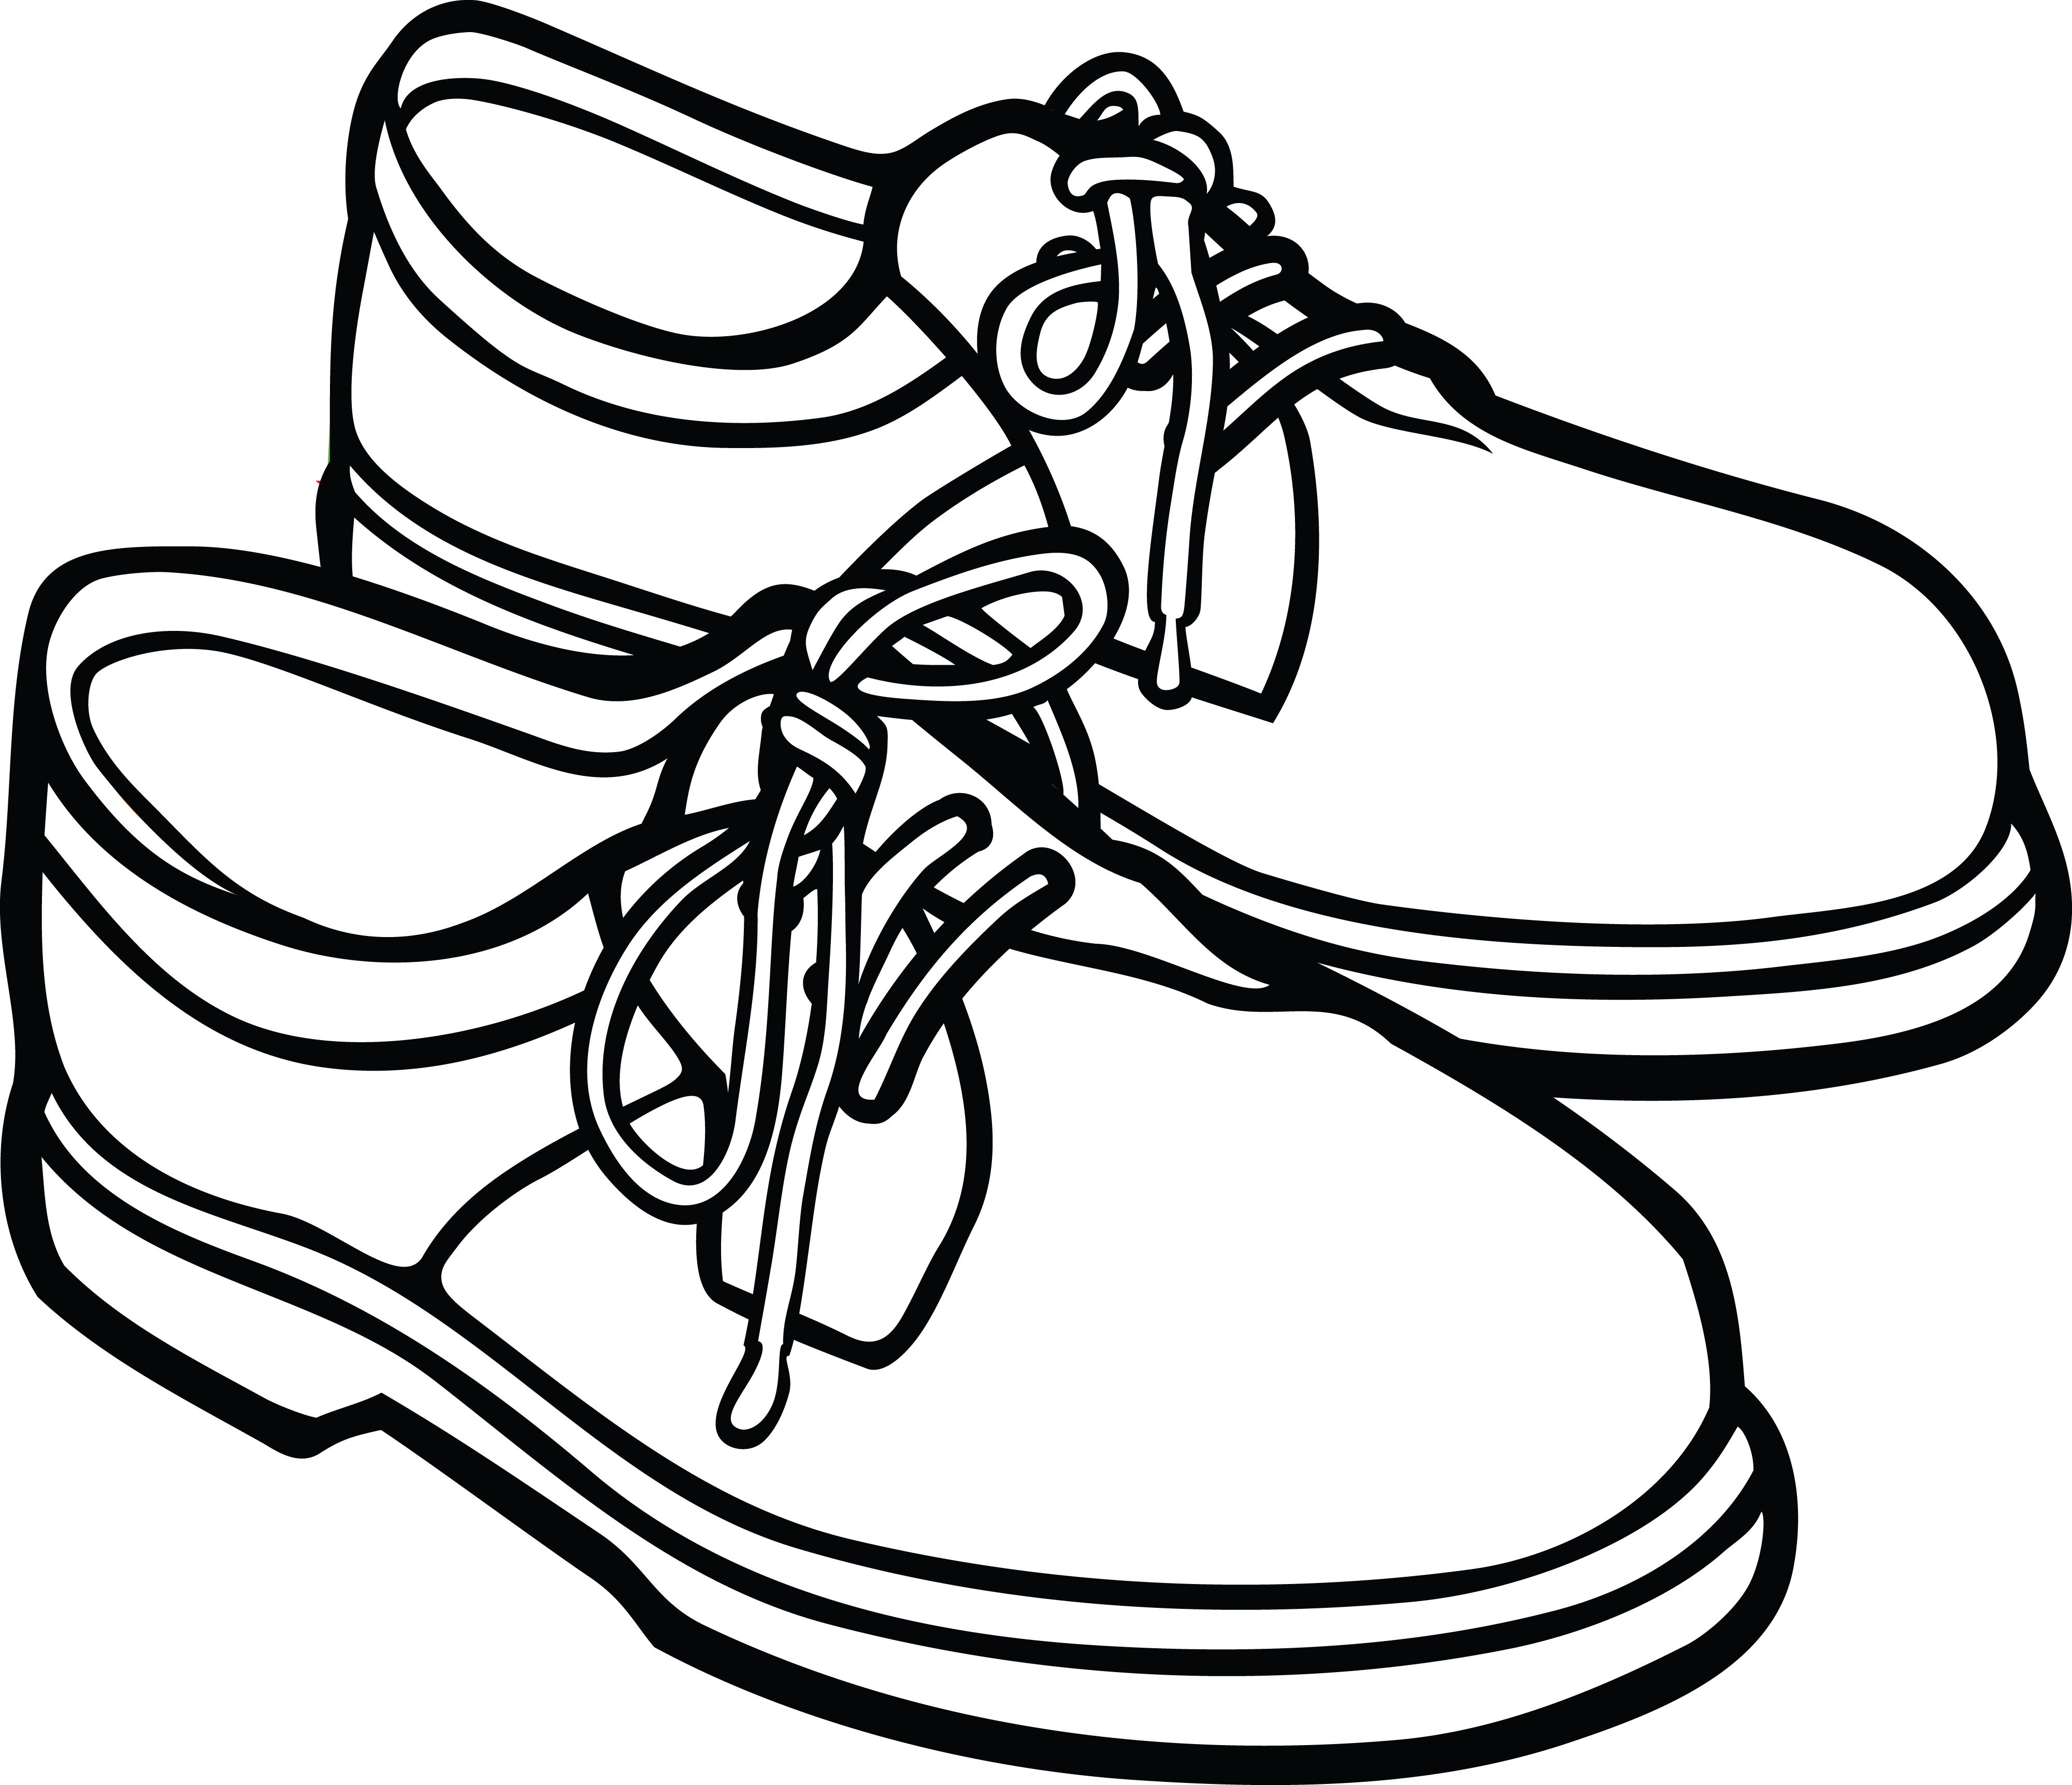 school shoes clipart - photo #31